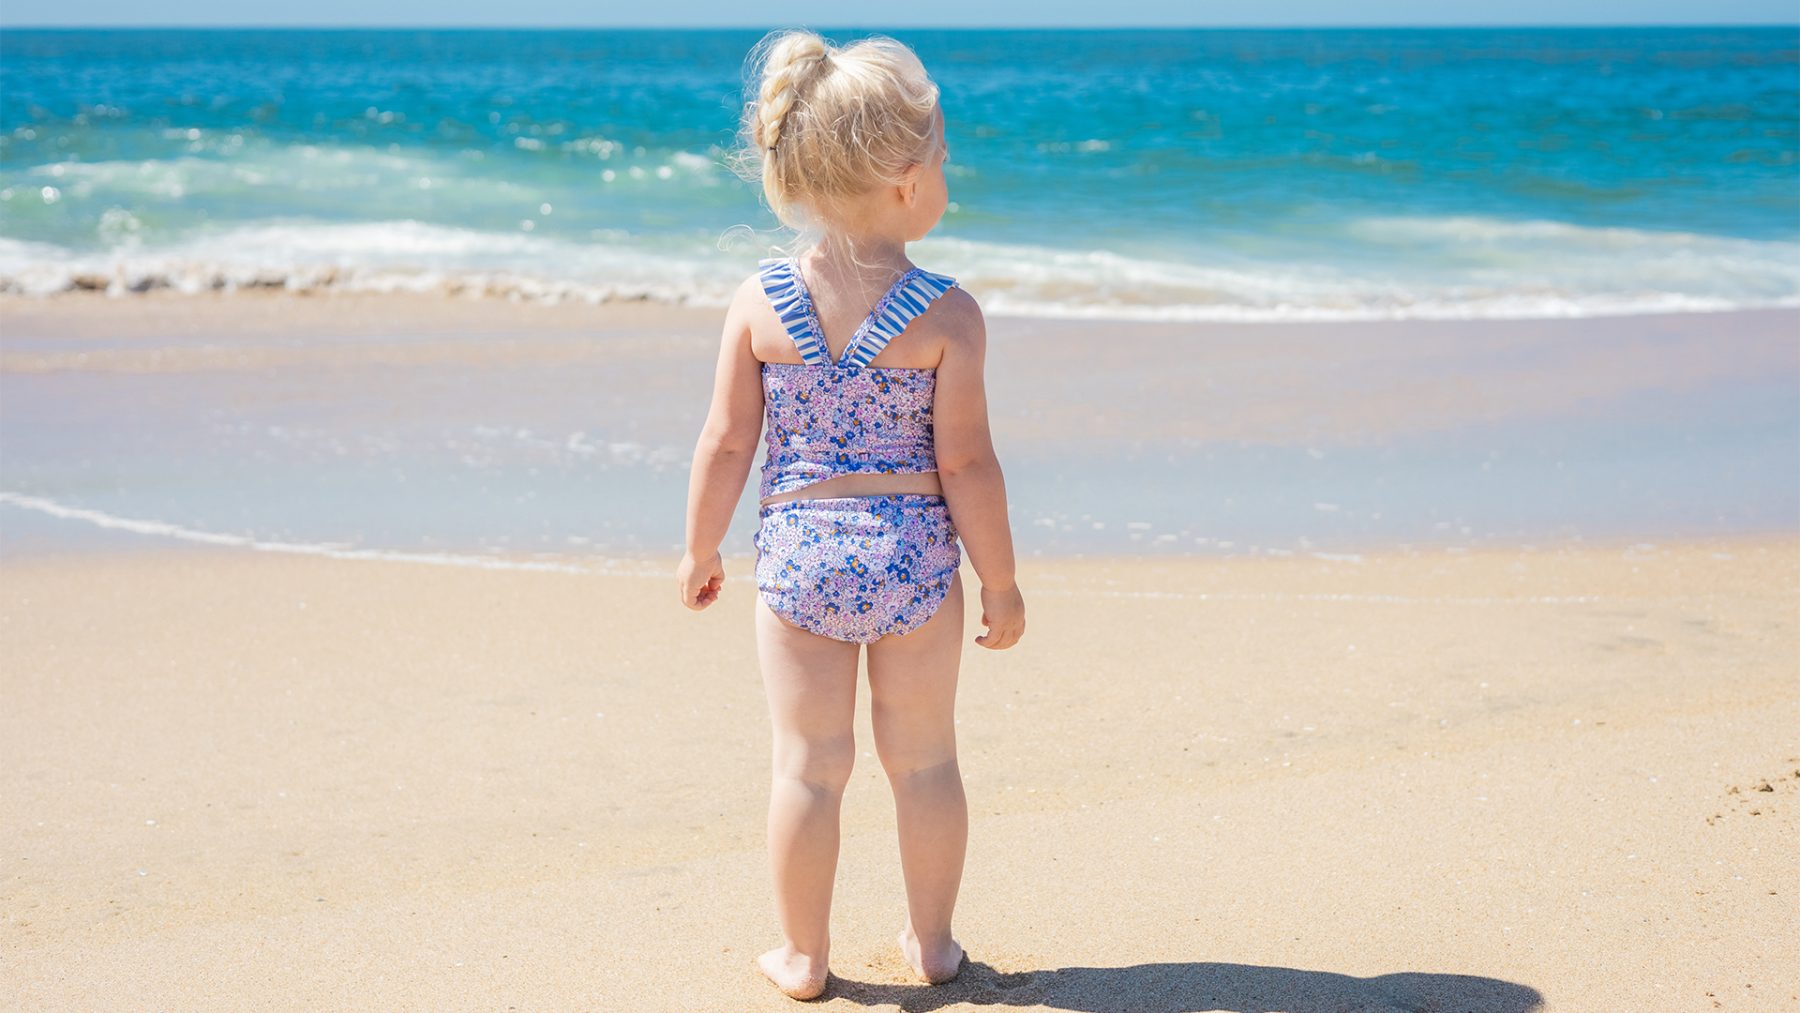 Zonnen zonder zorgen: zó raak je je kind niet kwijt op het strand